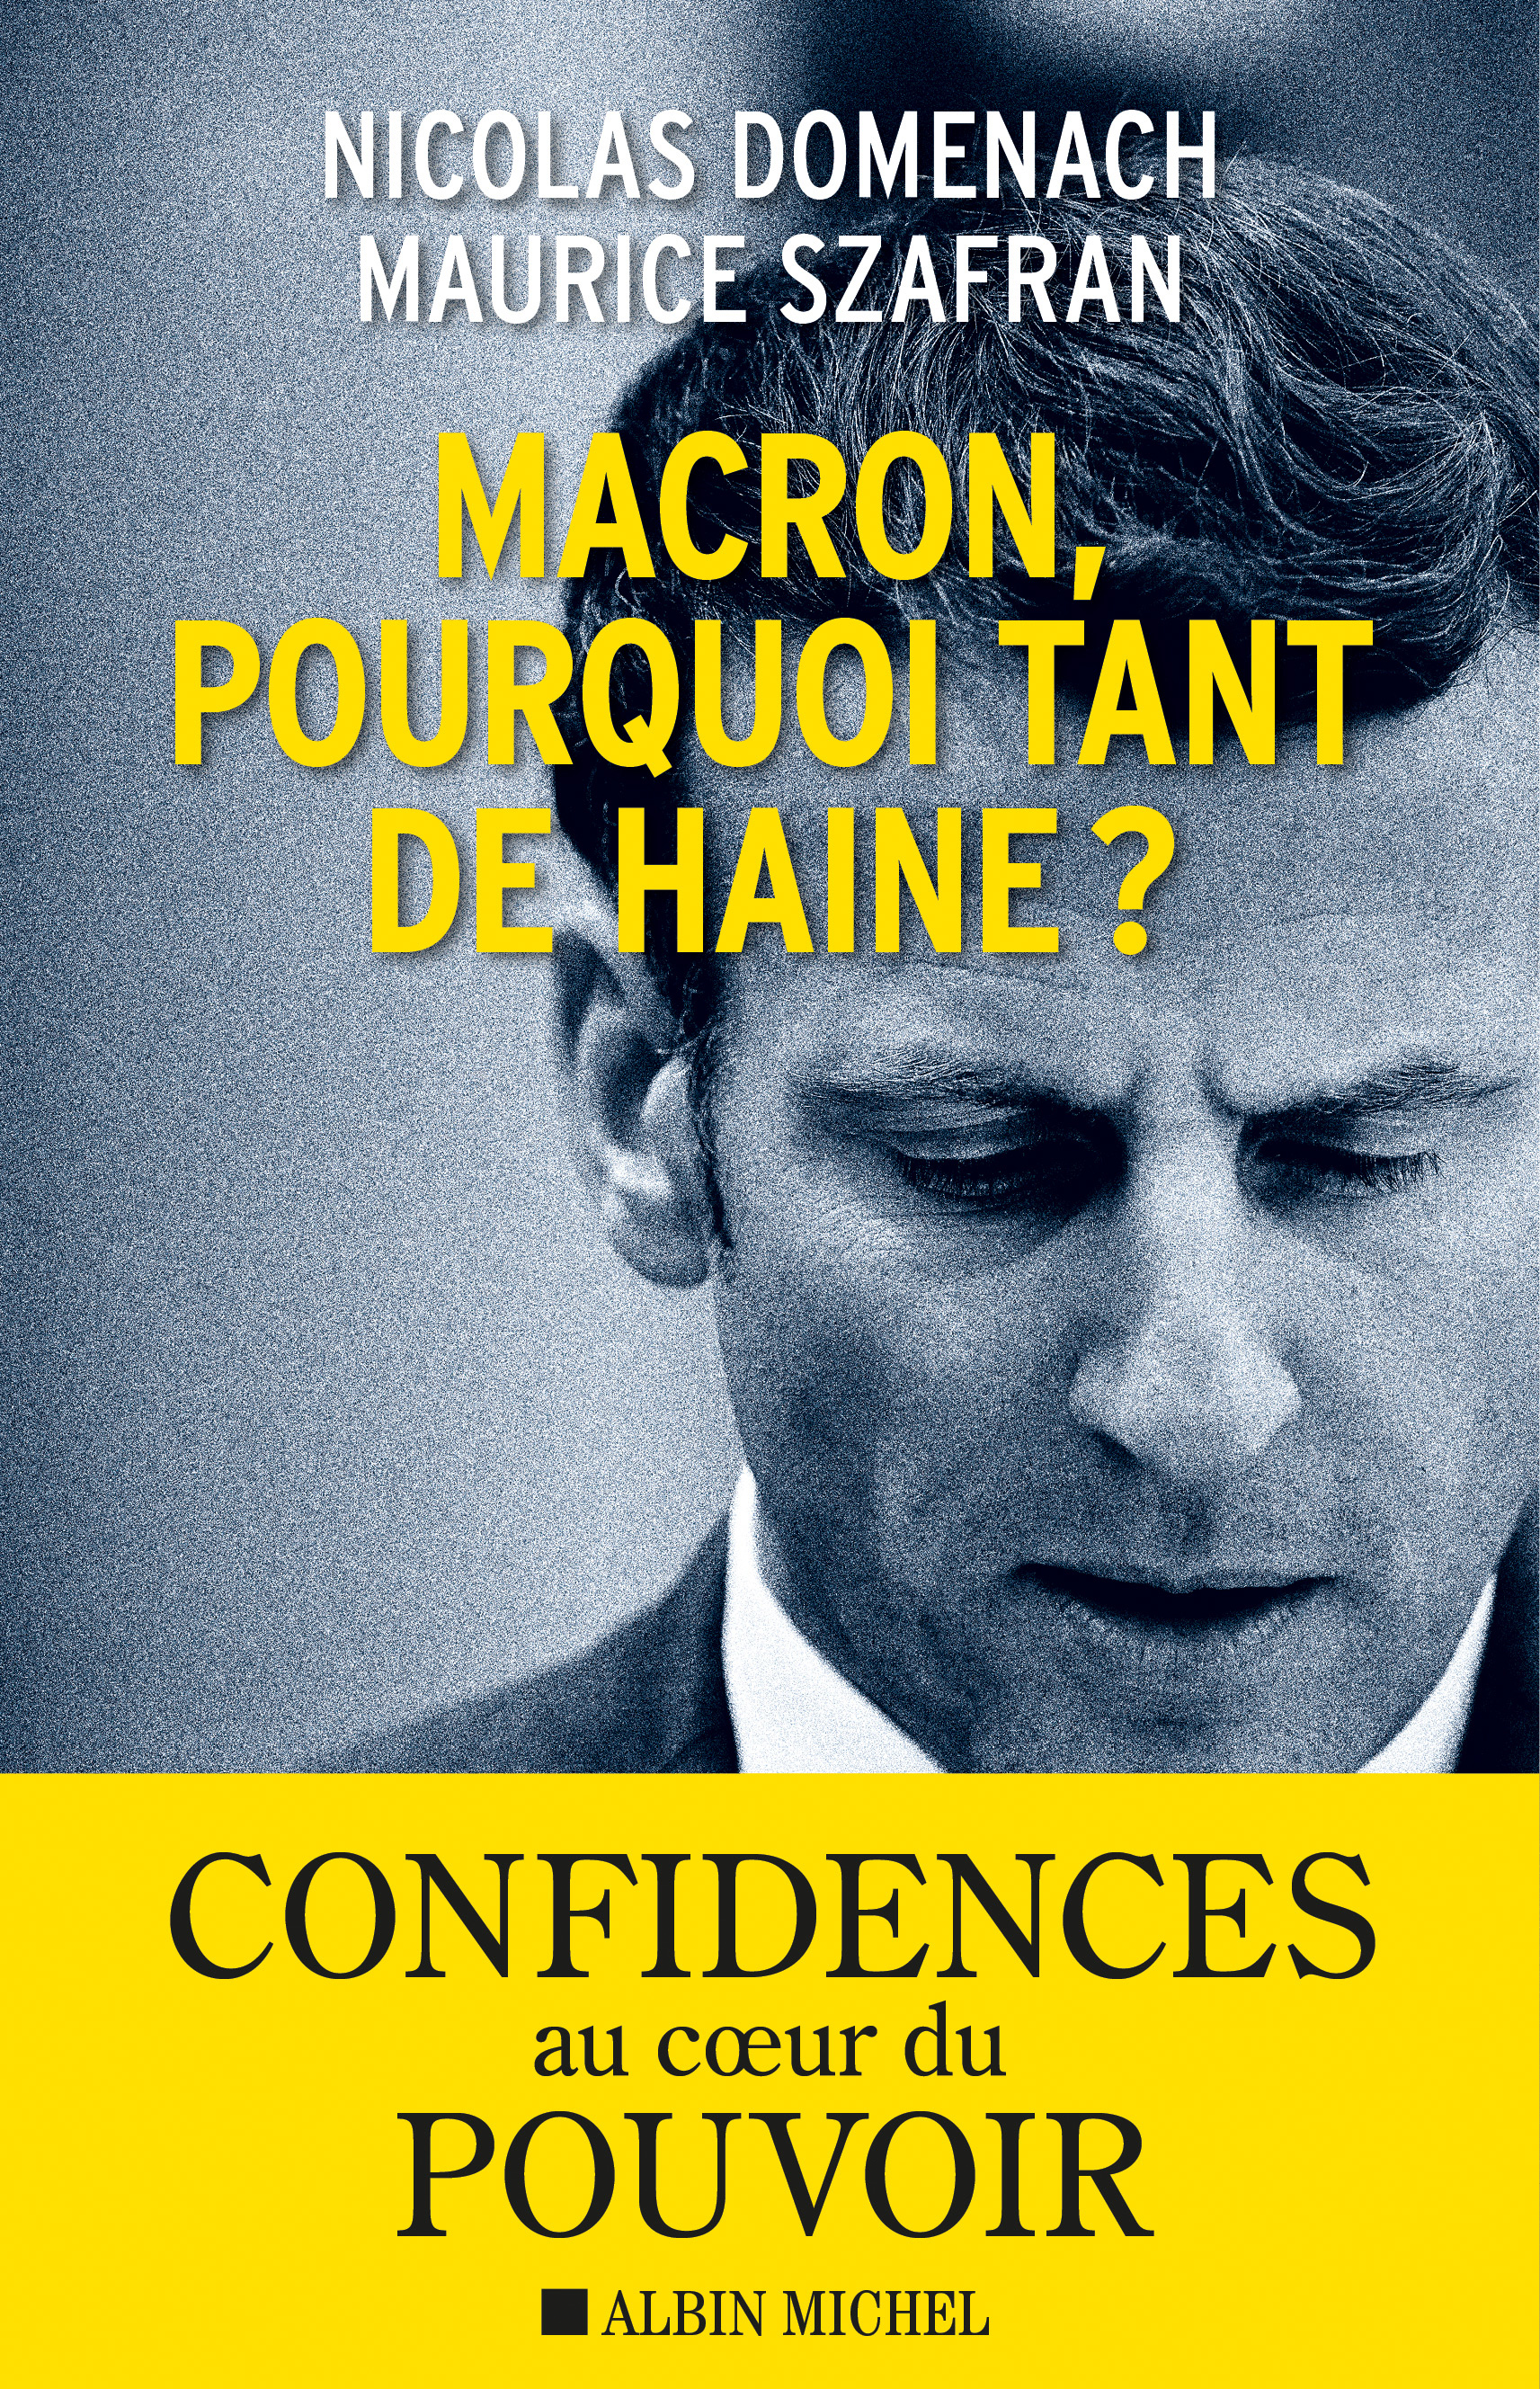 Couverture du livre Macron, pourquoi tant de haine ?